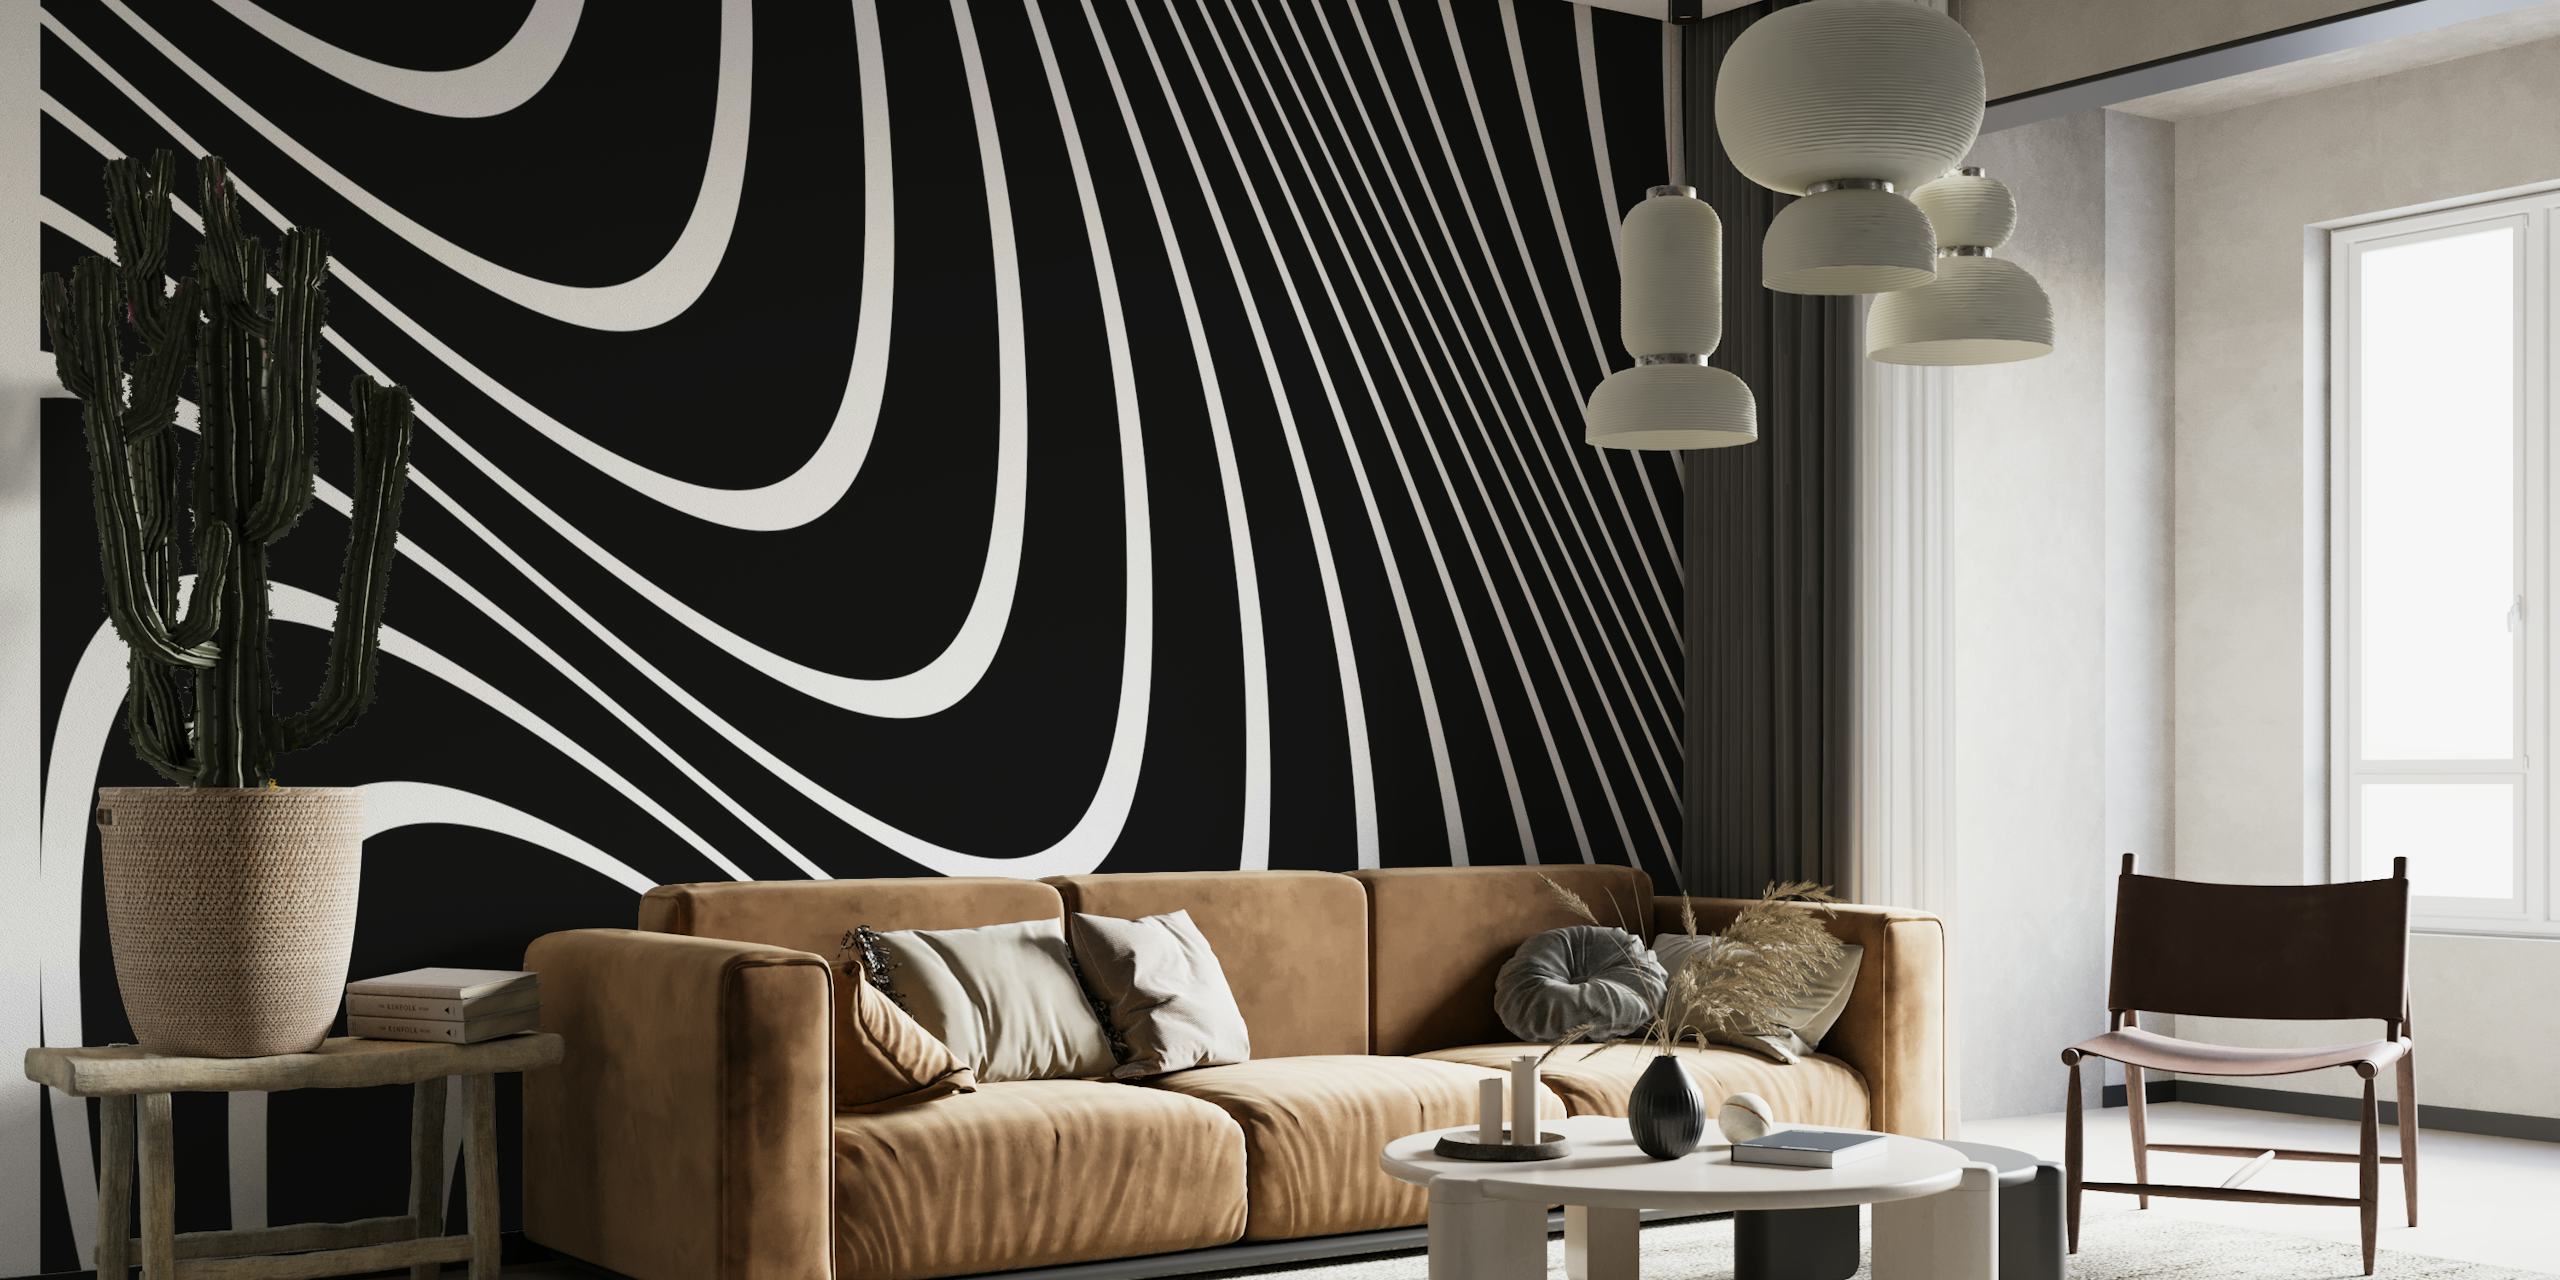 Murale astratto con linee bianche e nere per decorazioni murali moderne